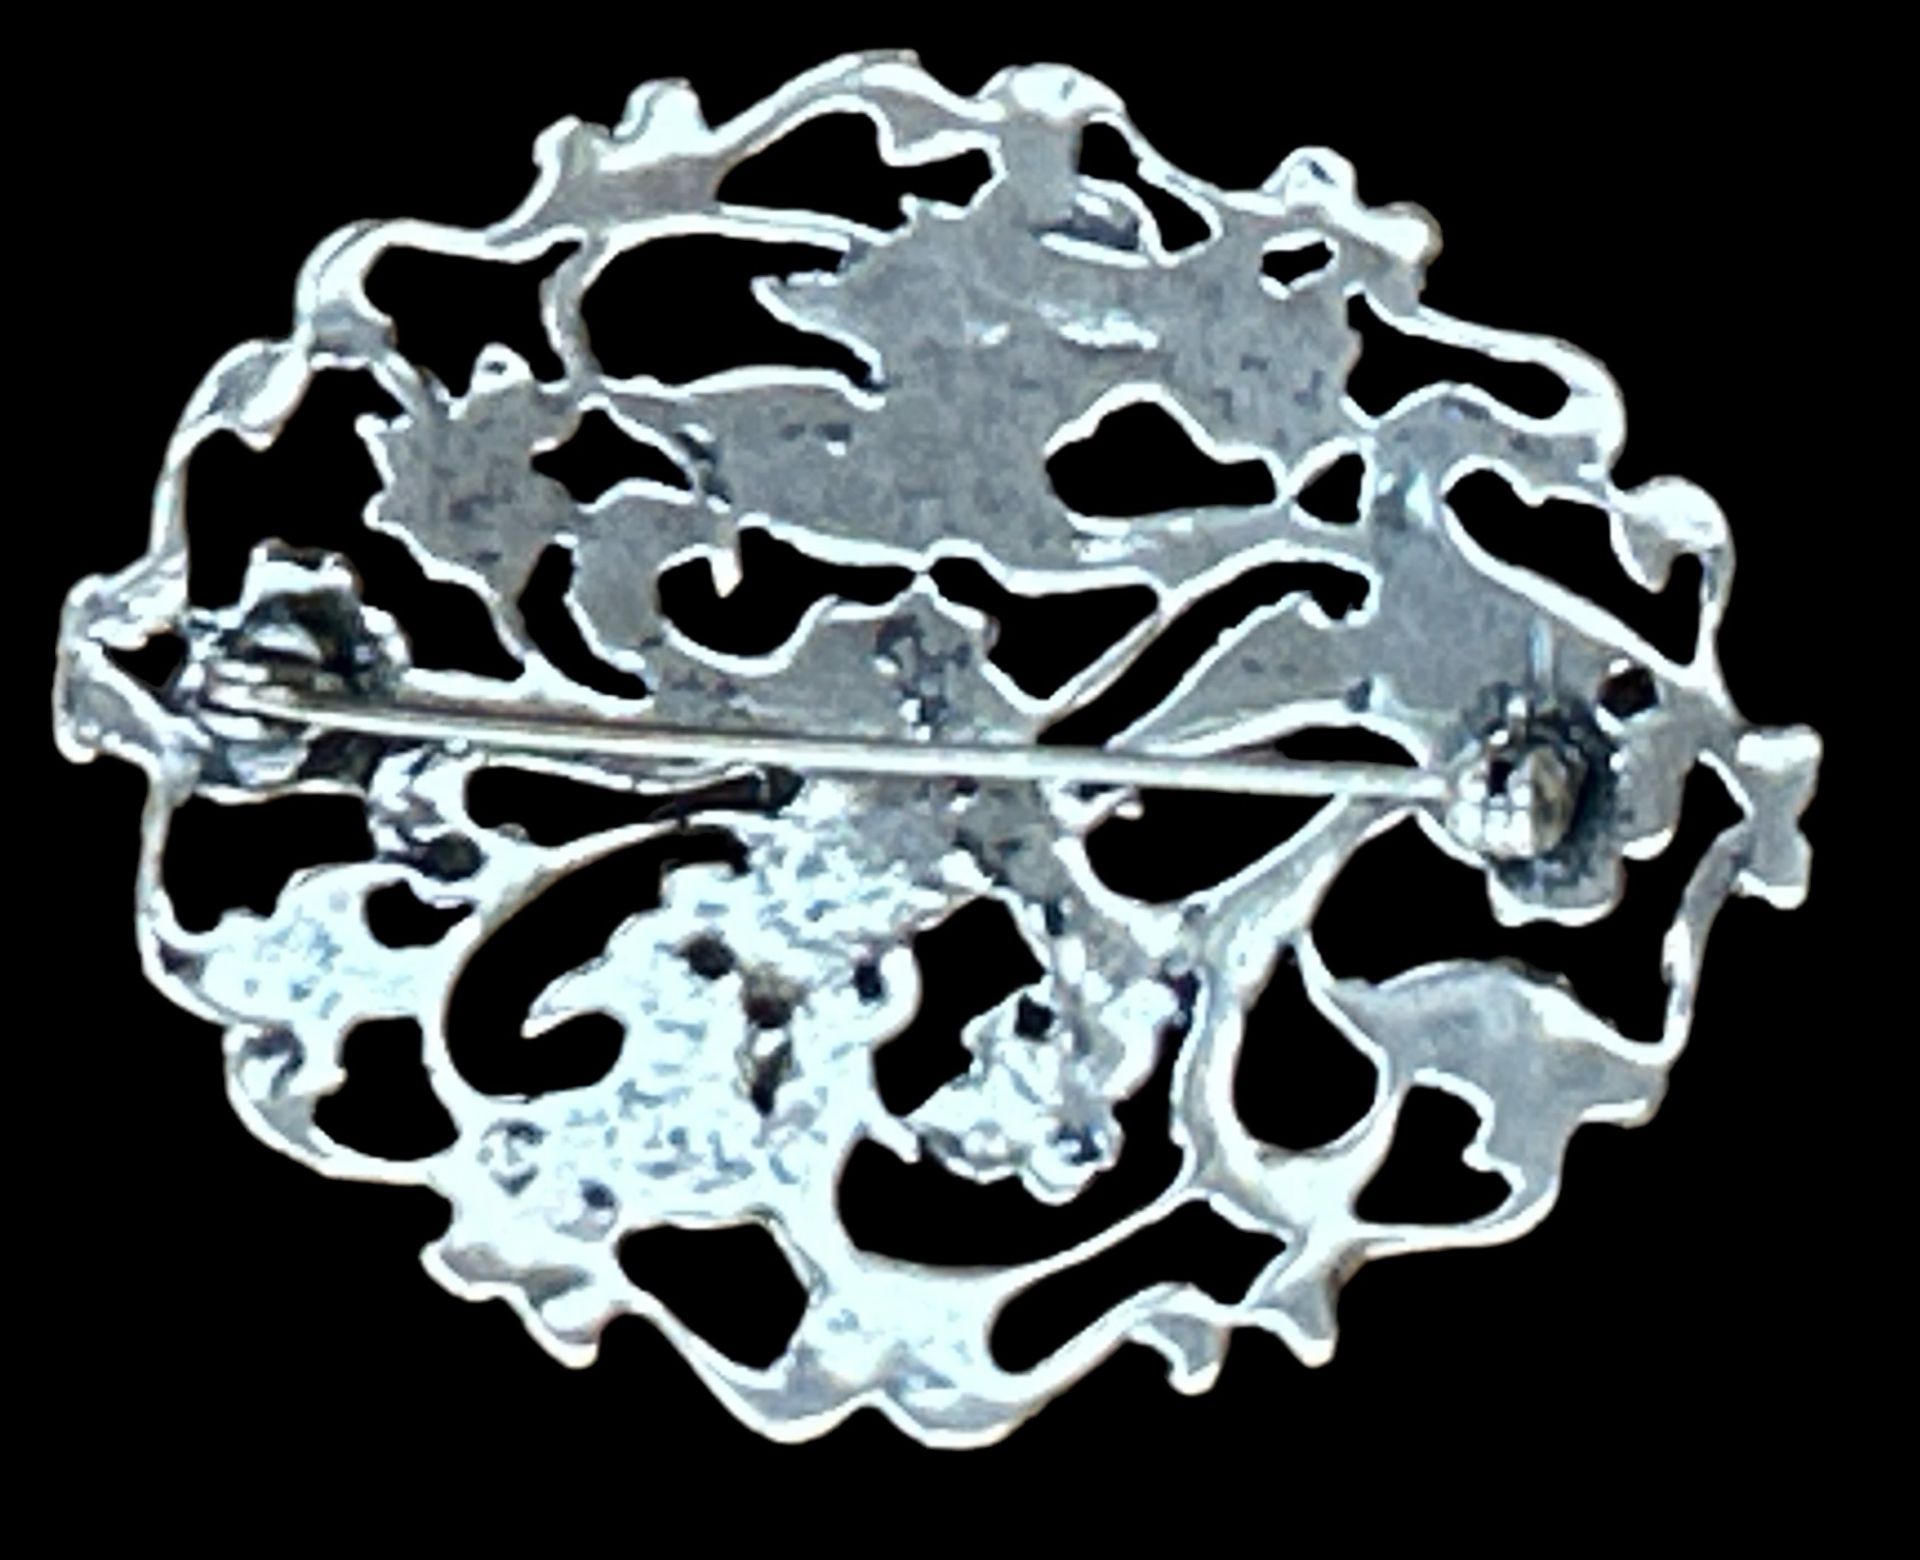 gr. Silber-Brosche.floral durchbrochen, undeutliche Punze, 5,5x4 cm, 15,1 gr. - Bild 2 aus 3